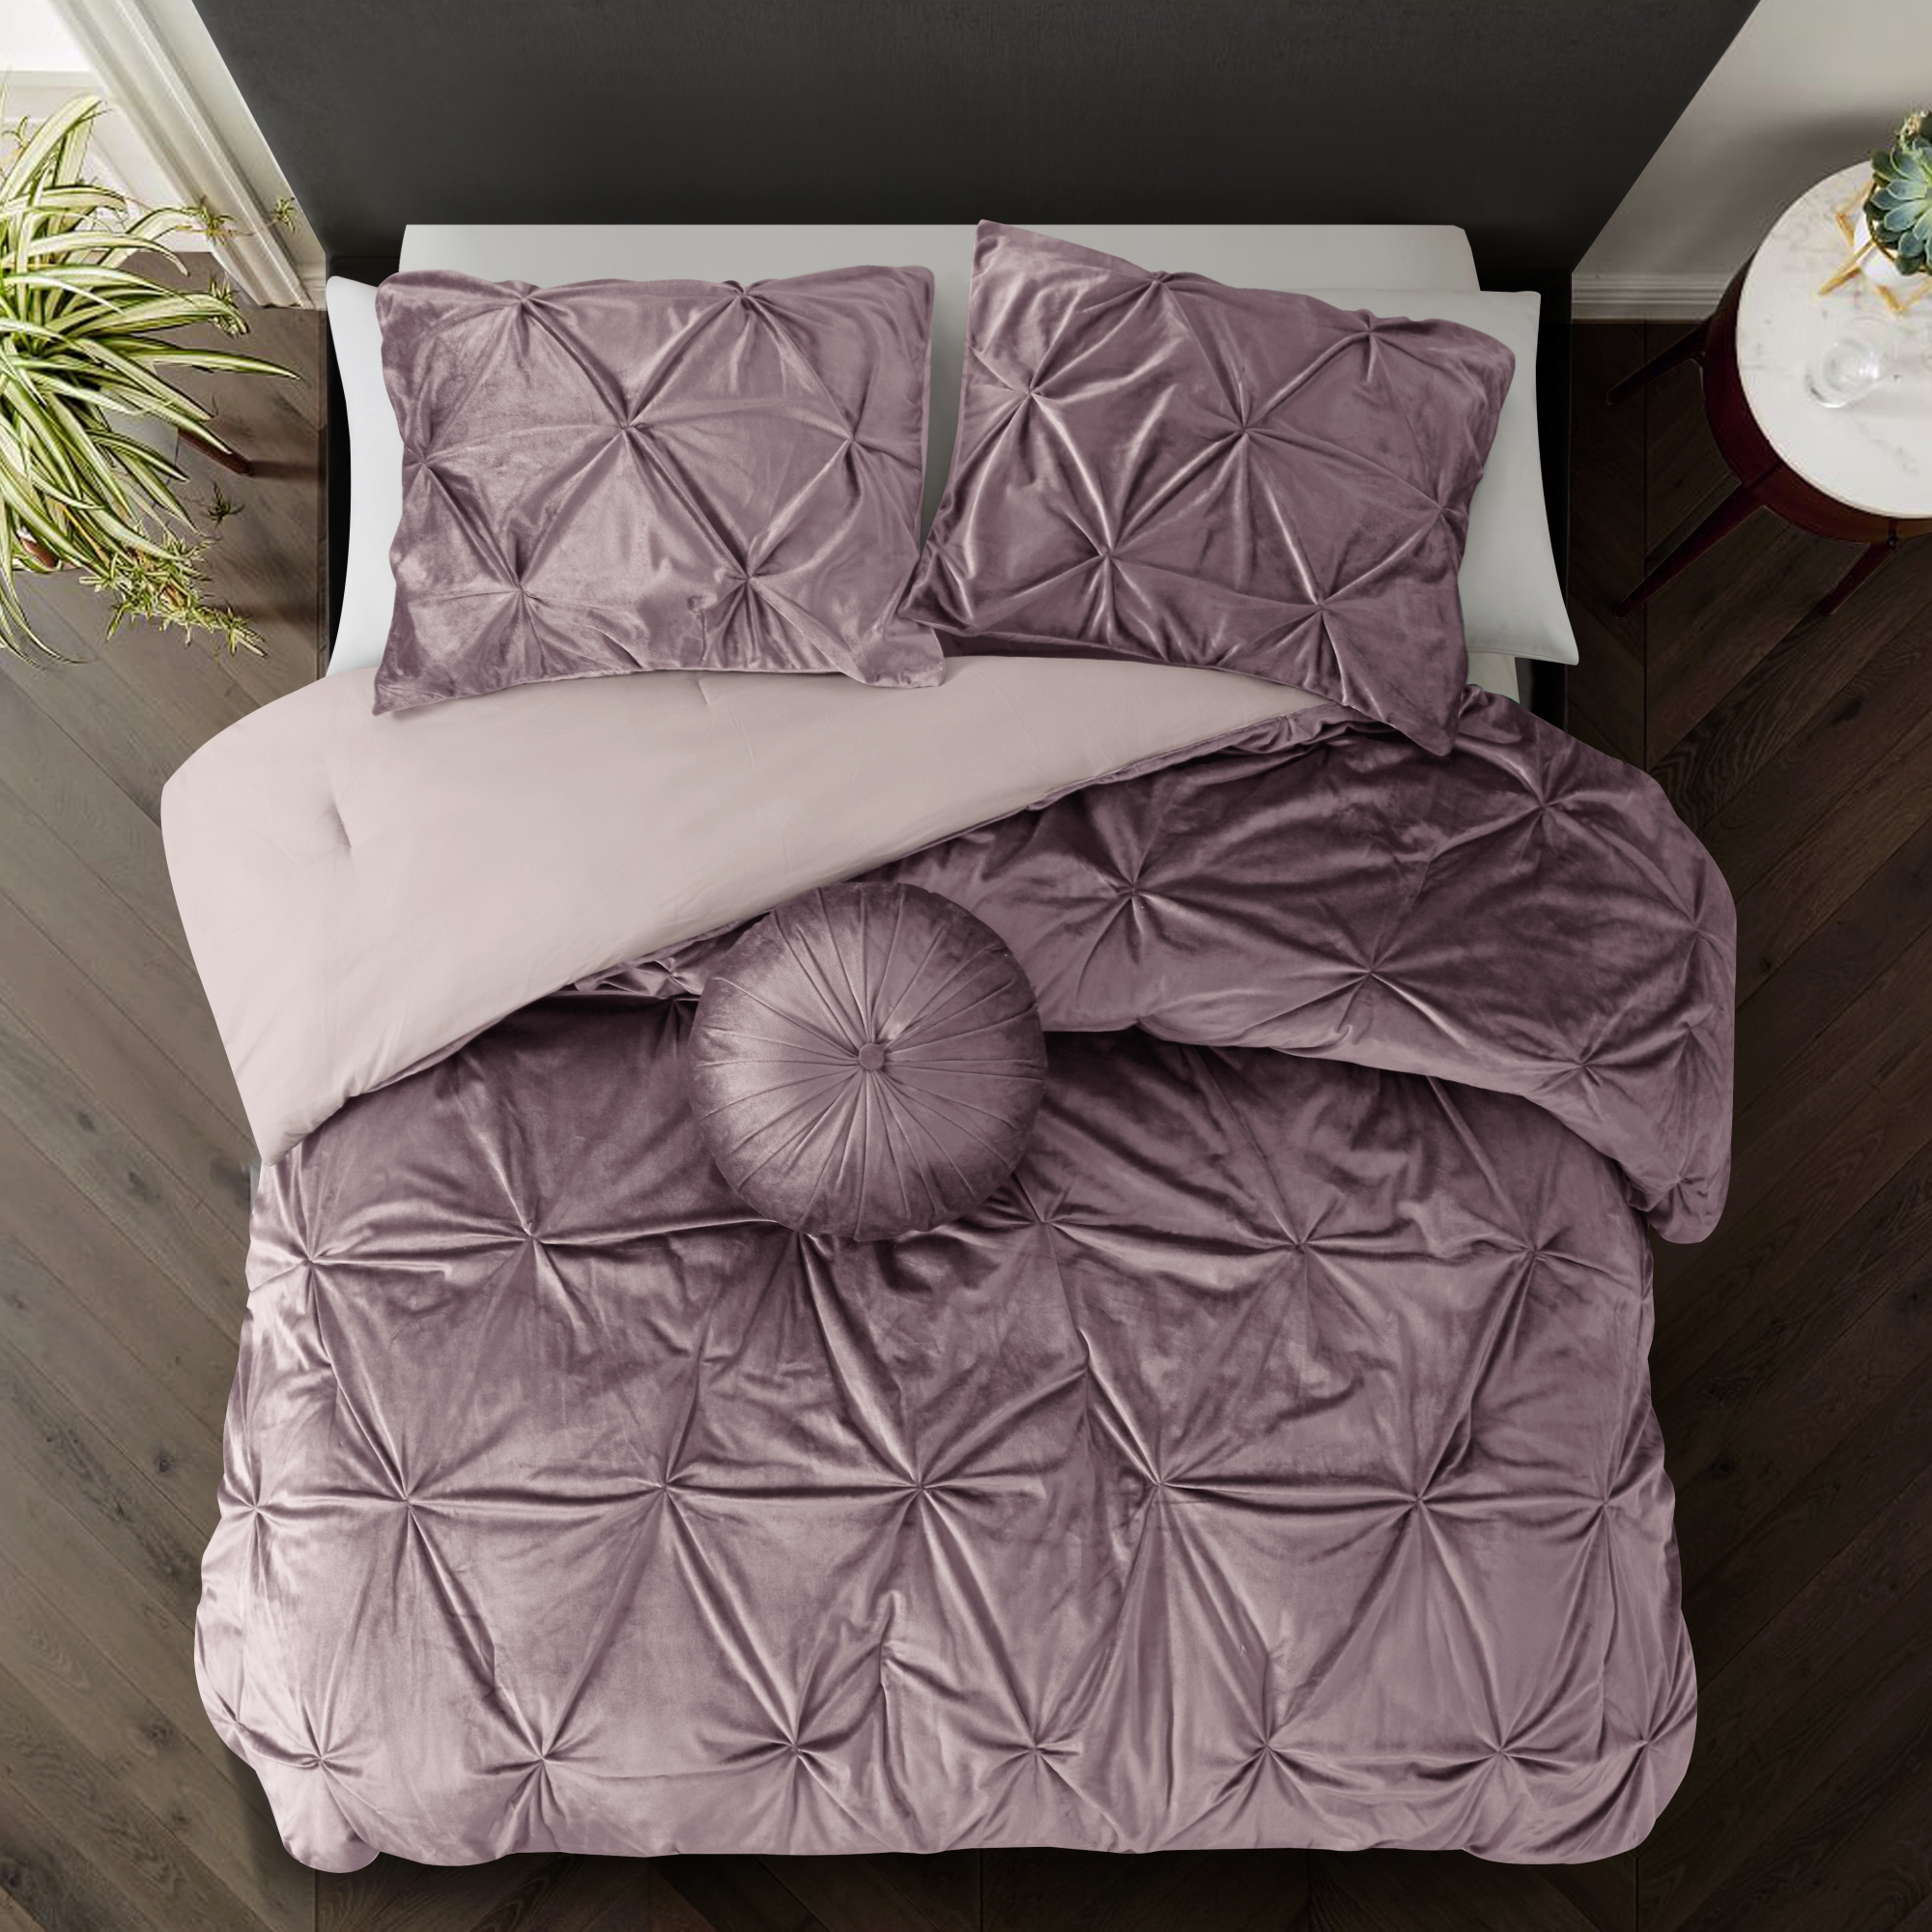 Grace Living Zakiya 5pc Comforter Set 2 Pillow Shams, 1 Decorative Pillow, 1 Comforter, 1 Bed Skirt Shiny Velvet